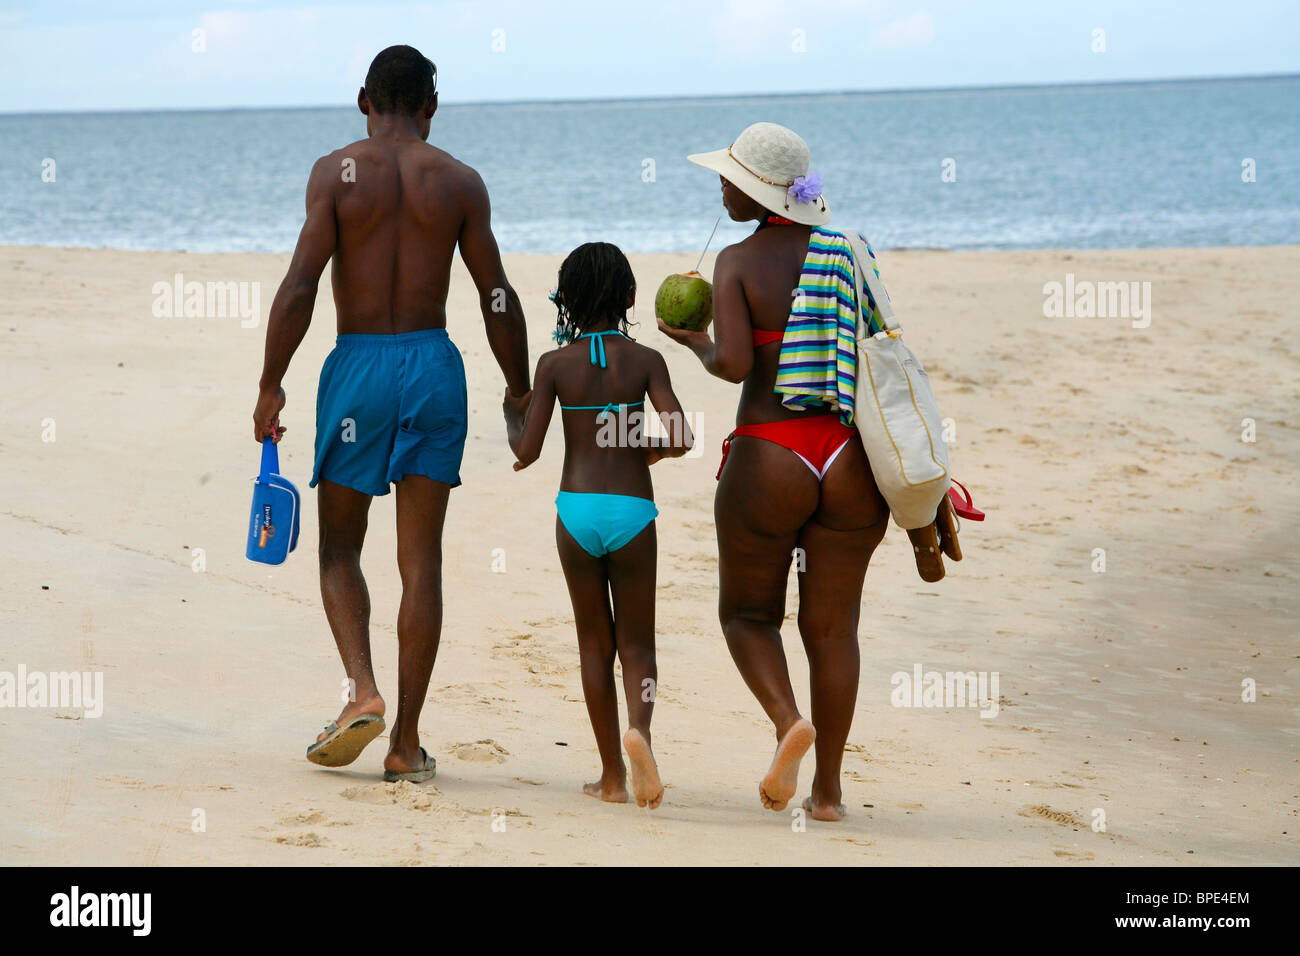 La famille brésilienne afro marche sur la plage de Coroa Vermelha, 13 km au nord de Porto Seguro, Bahia, Brésil Banque D'Images